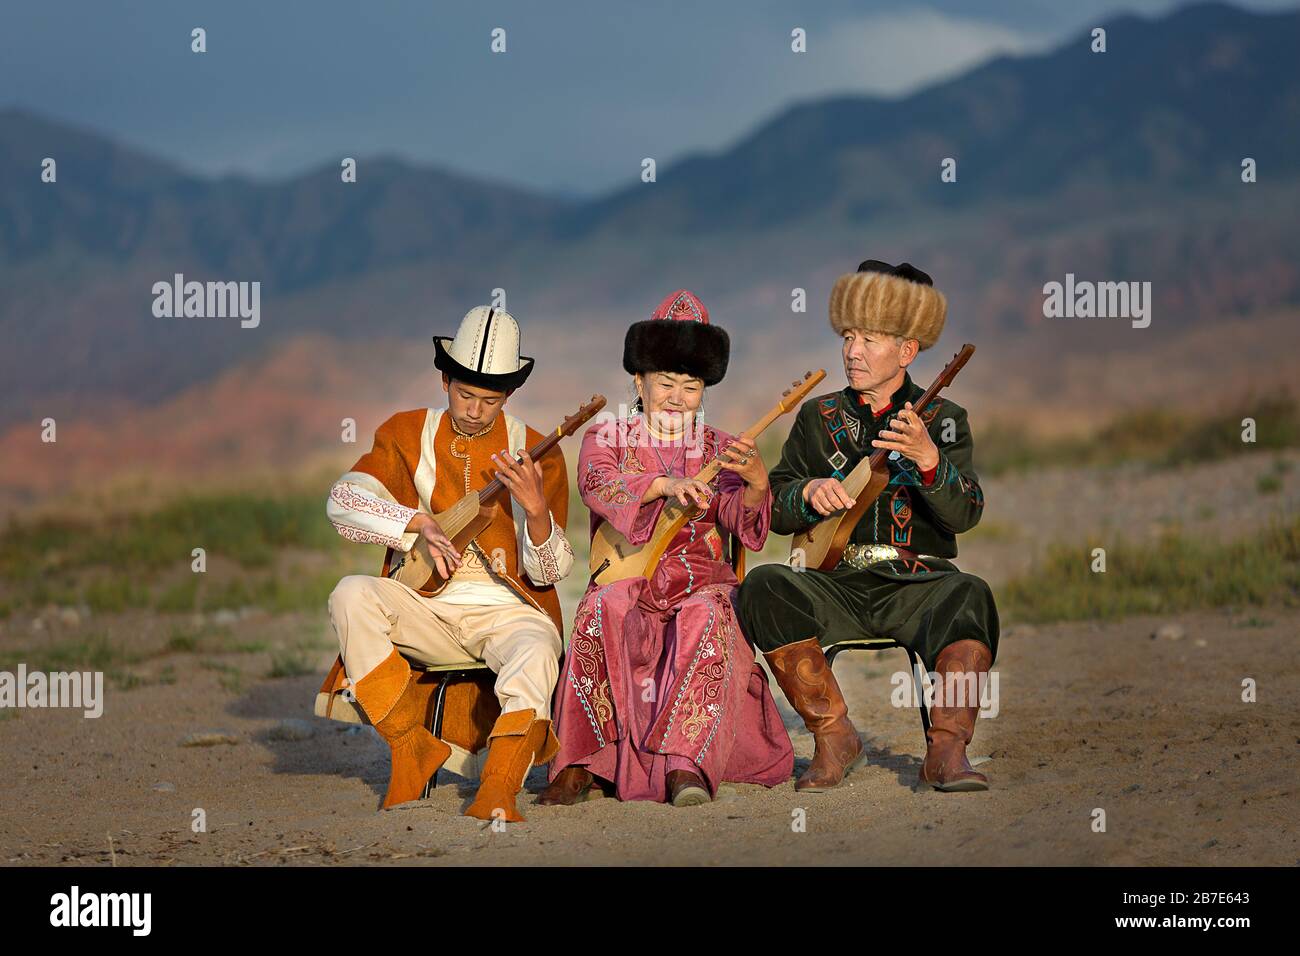 Musicisti che suonano strumenti tradizionali locali, a Issyk Kul, Kirghizistan Foto Stock